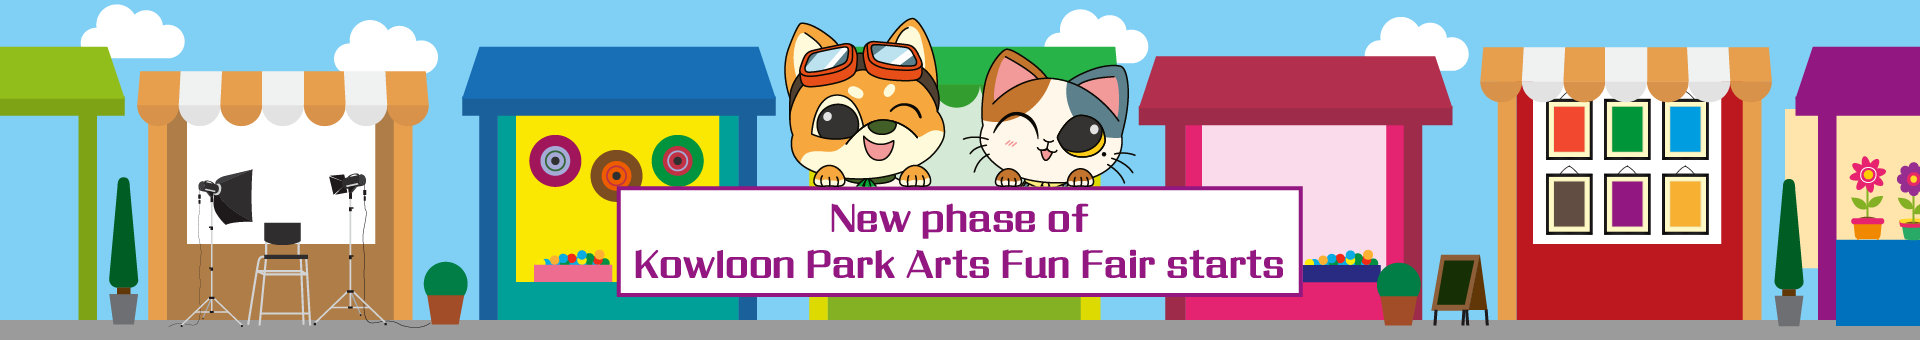 New phase of Kowloon Park Arts Fun Fair starts